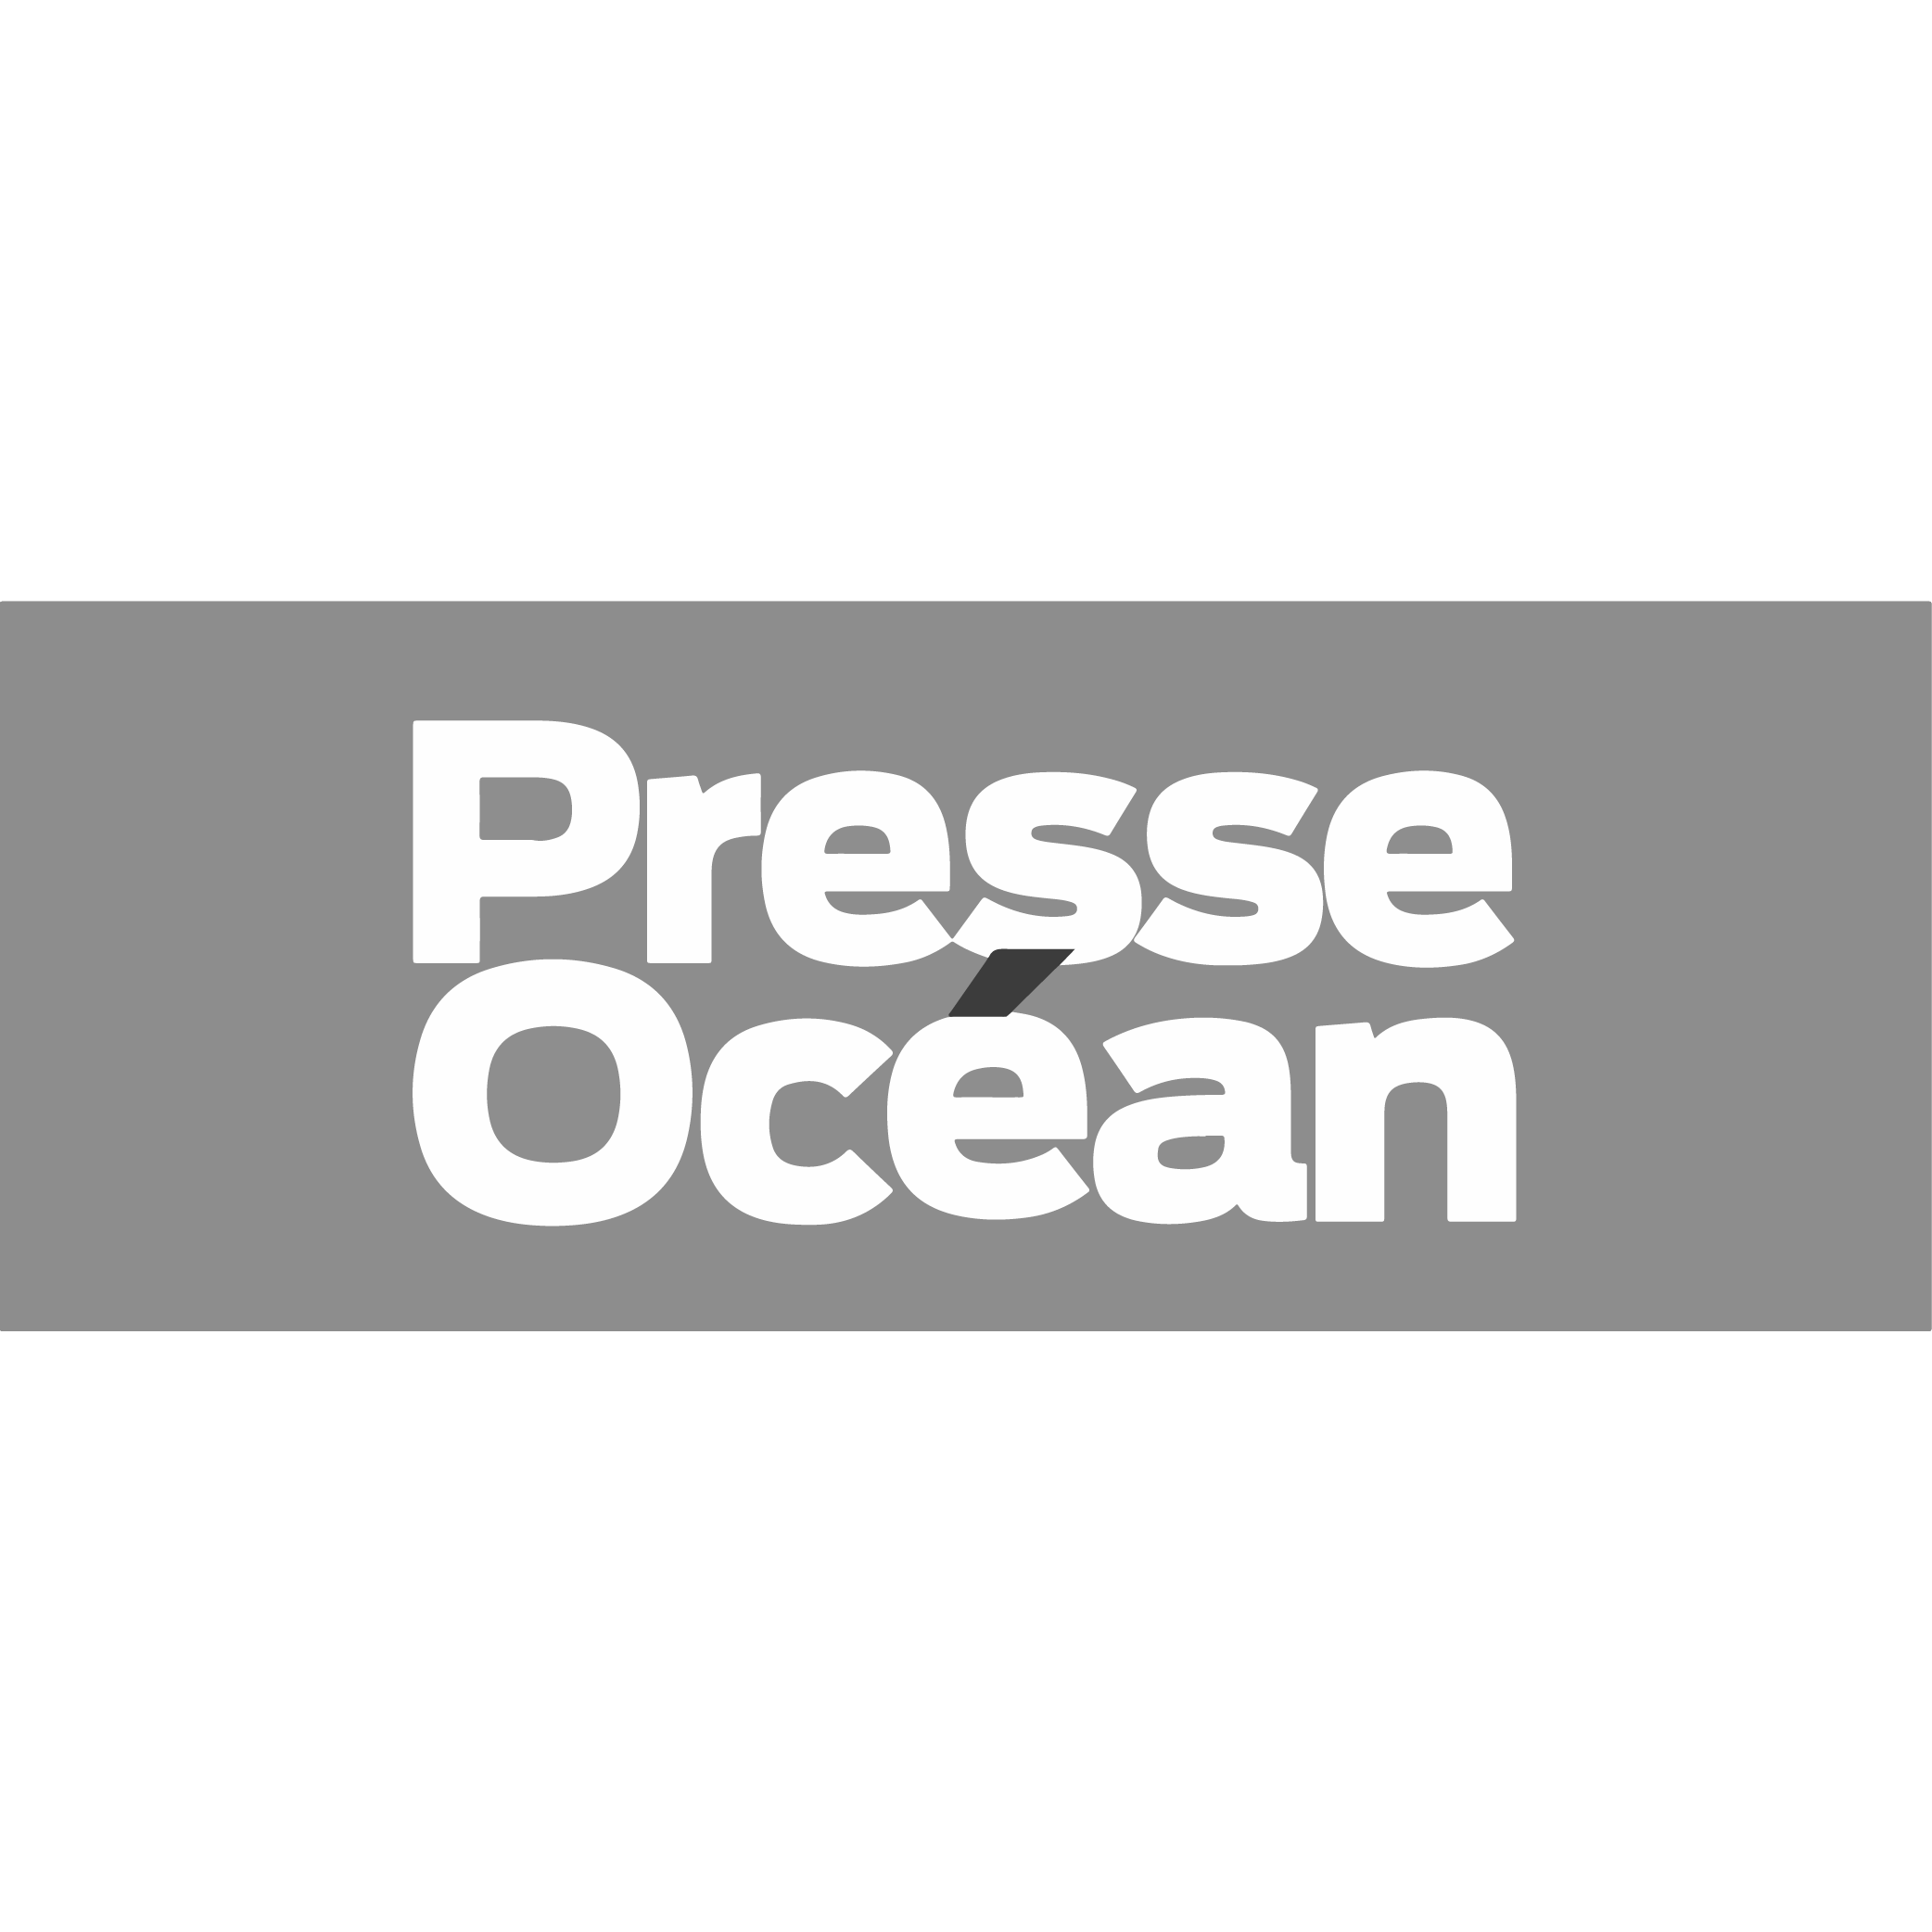 presse-ocean-logo-gueule-de-joie